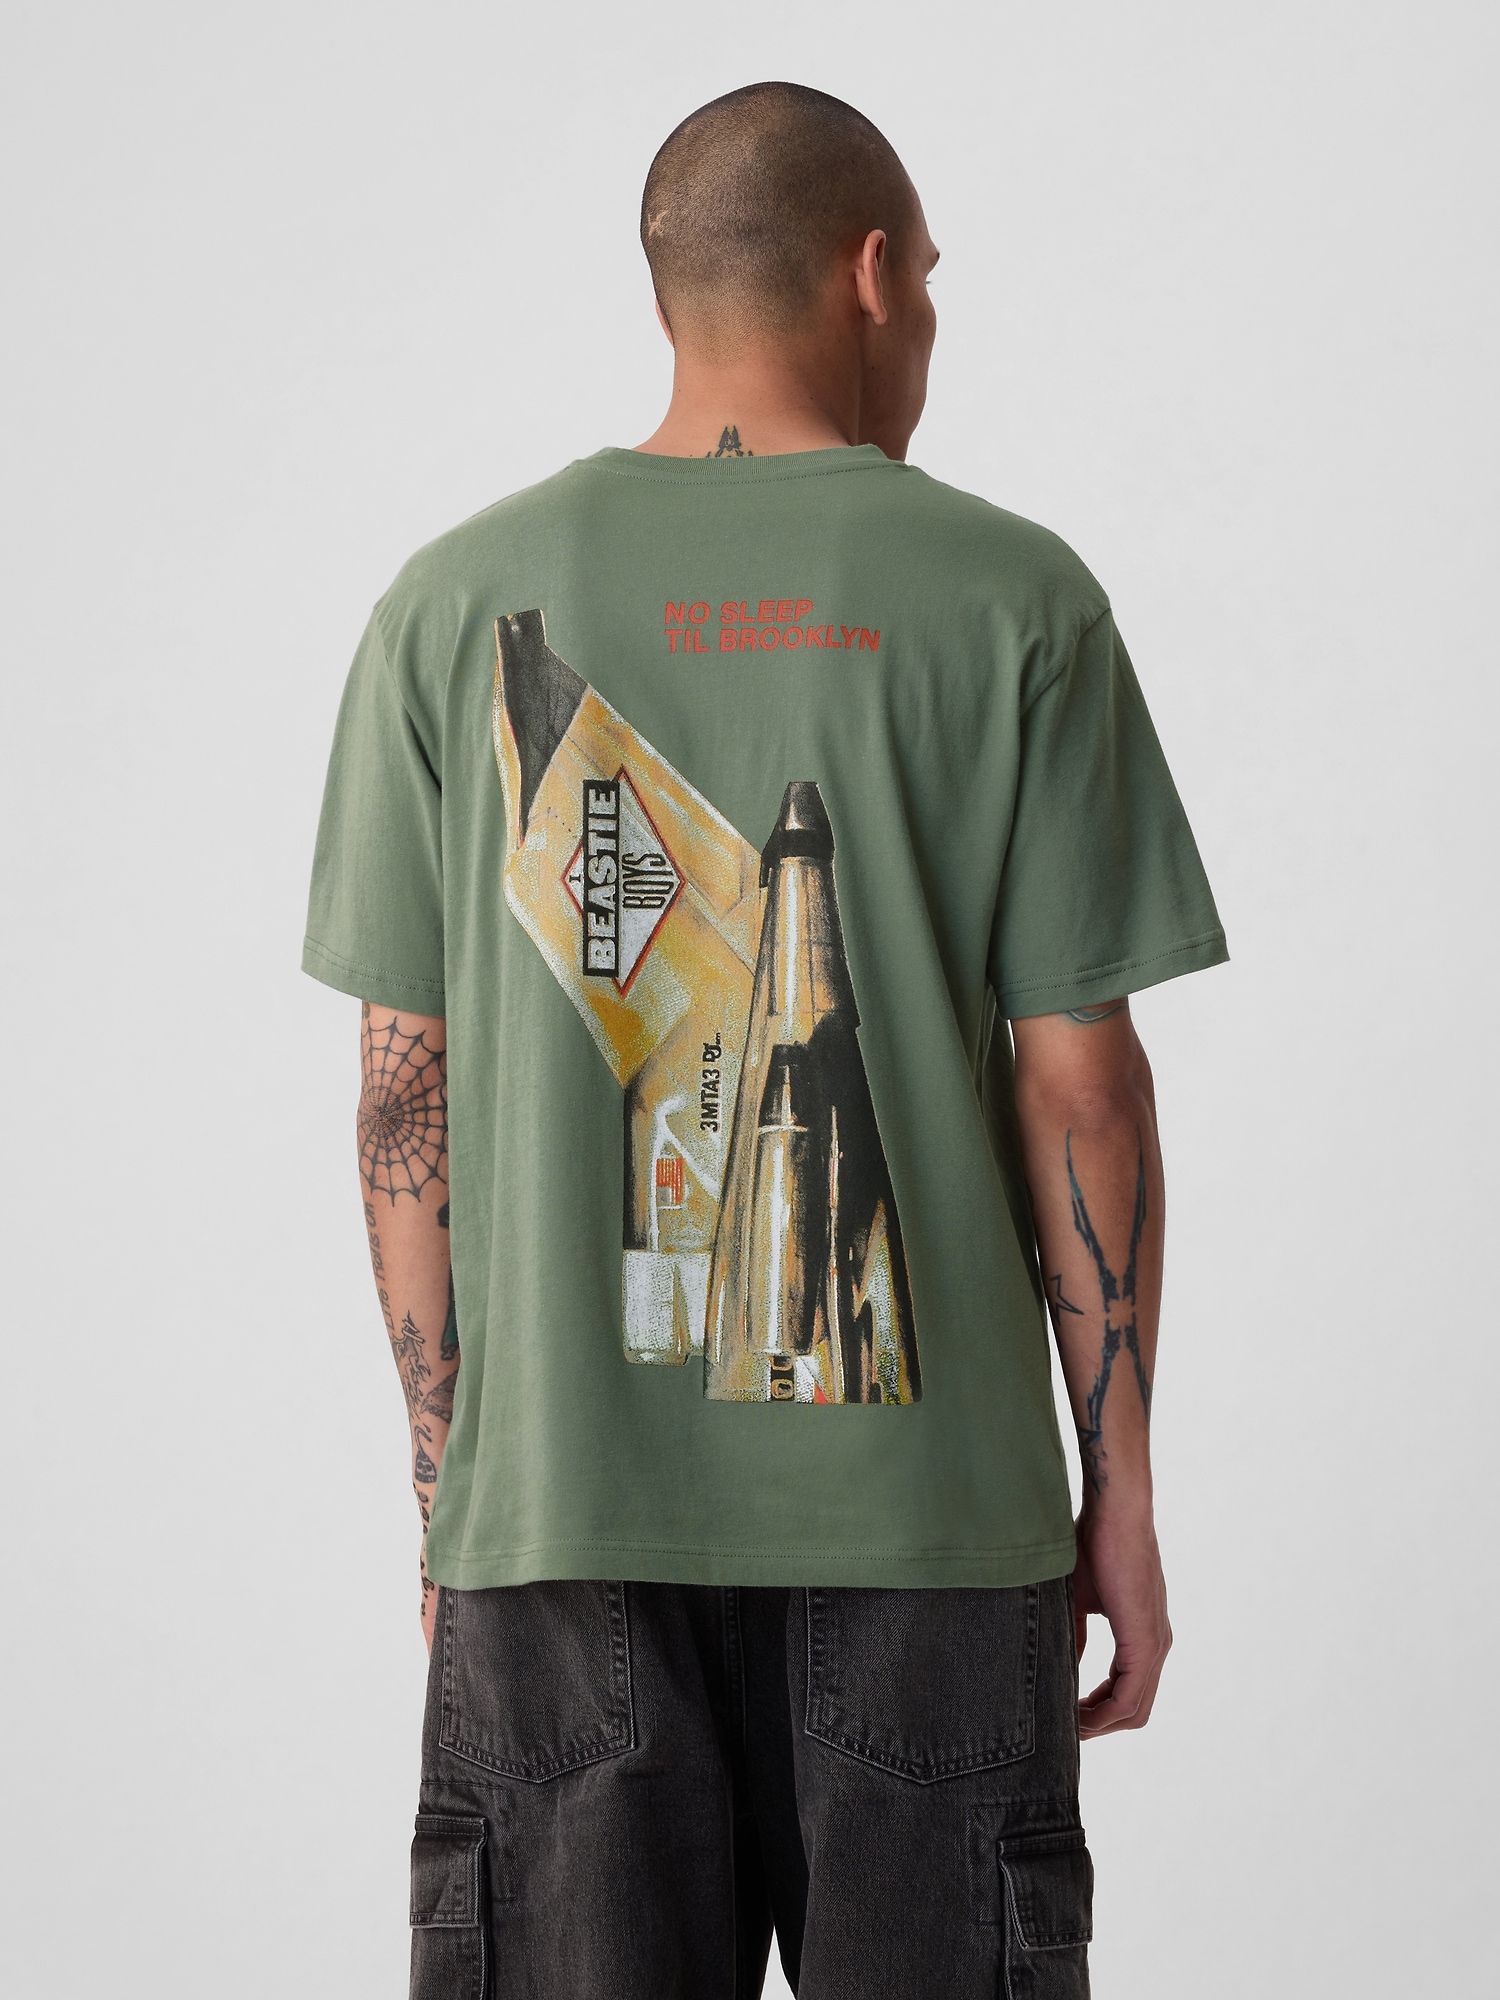 Beastie Boys' Graphic T-Shirt